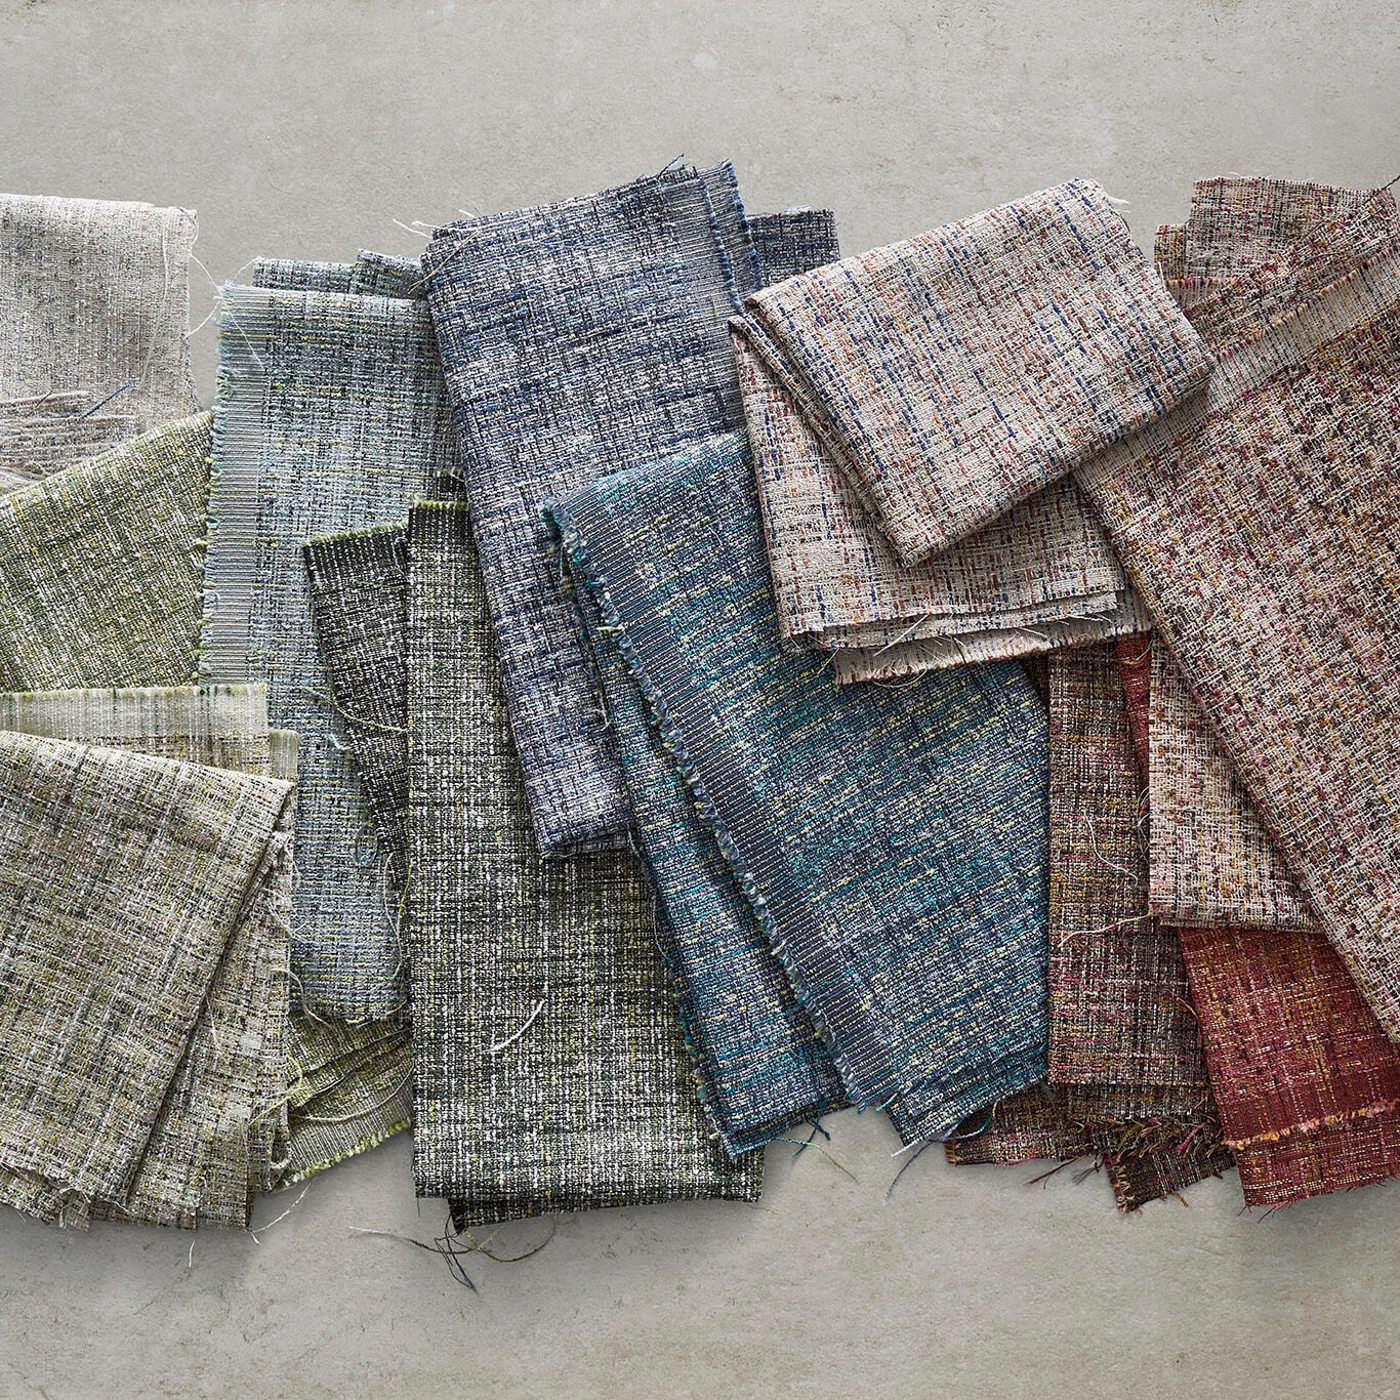 Cetara Petal Fabric by CNC